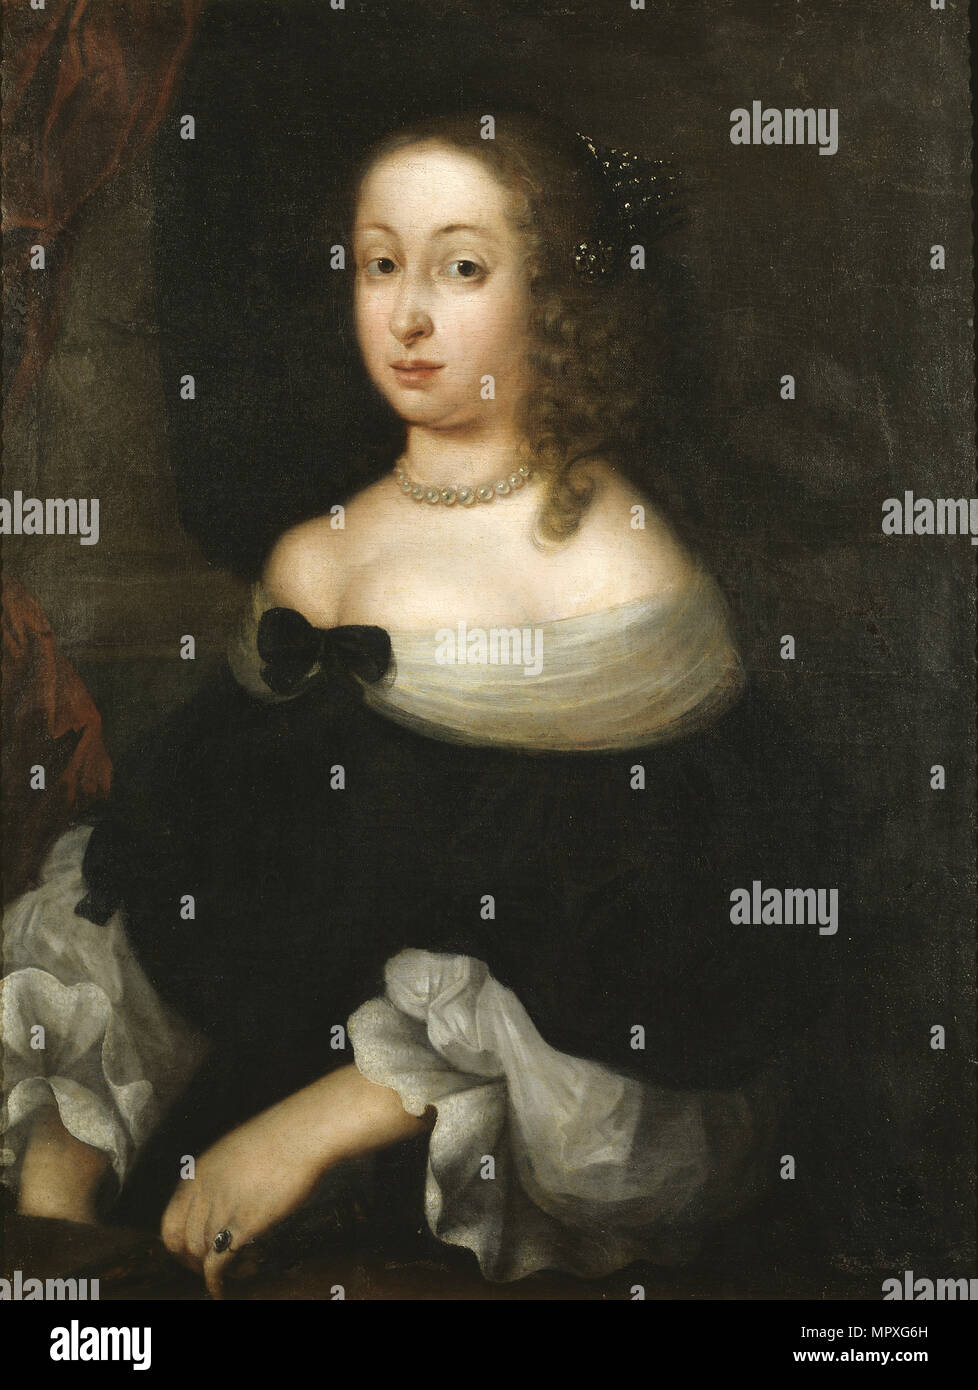 Portrait of Hedvig Eleonora of Holstein-Gottorp (1636-1715), Queen of Sweden. Stock Photo